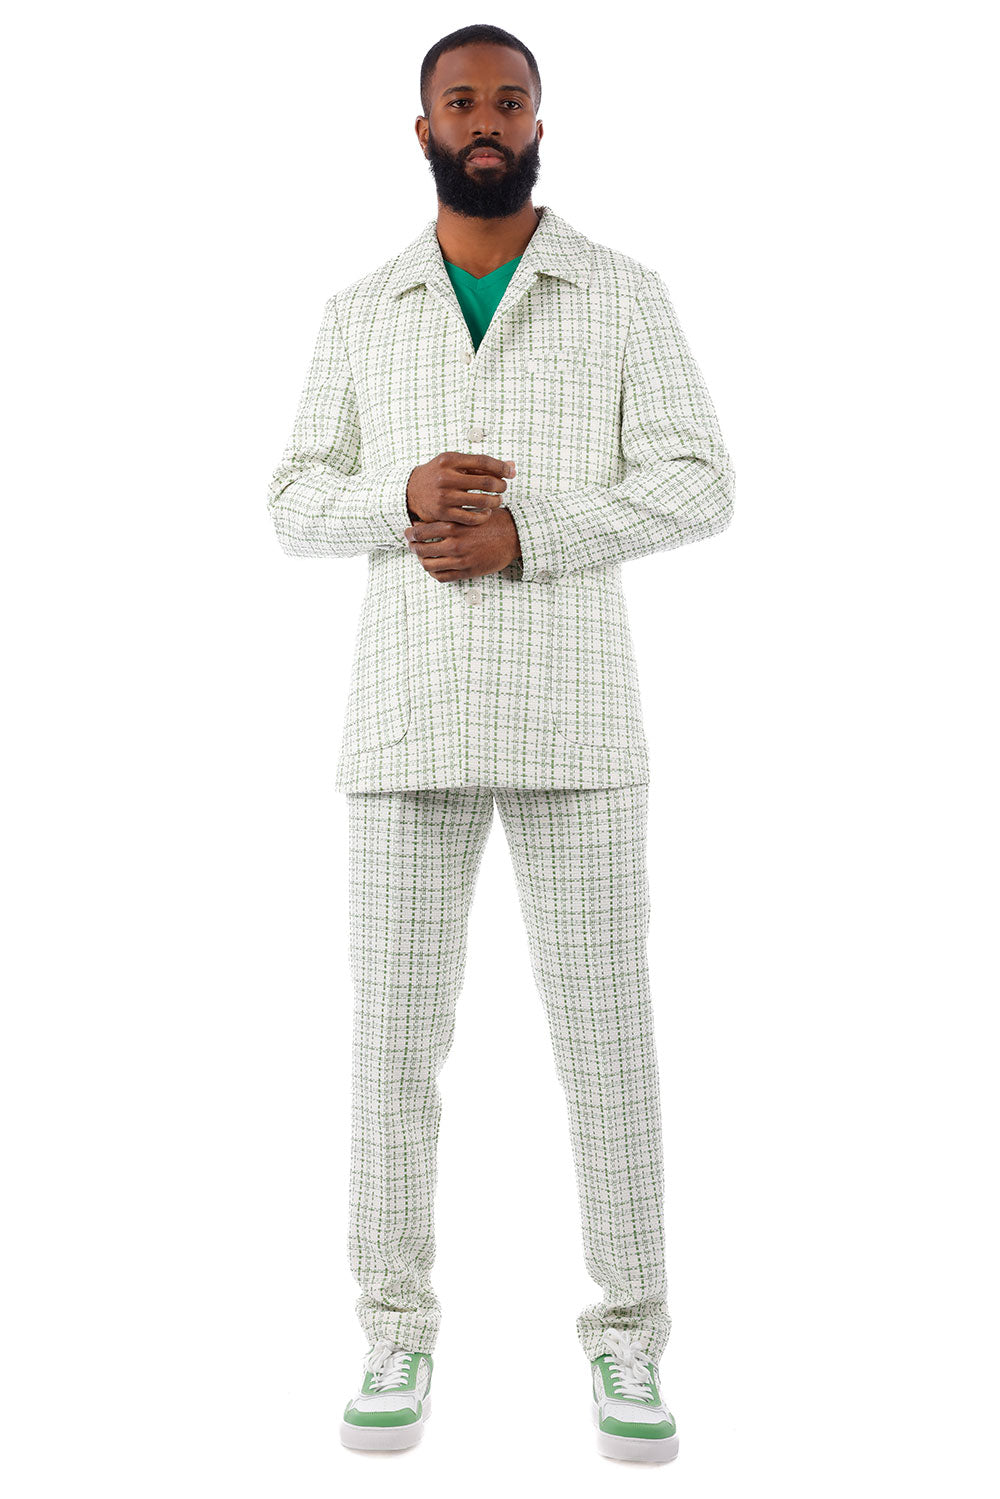 Barabas Men's Geometric Pattern Wool Collared Suit Set 4SU07 White Green